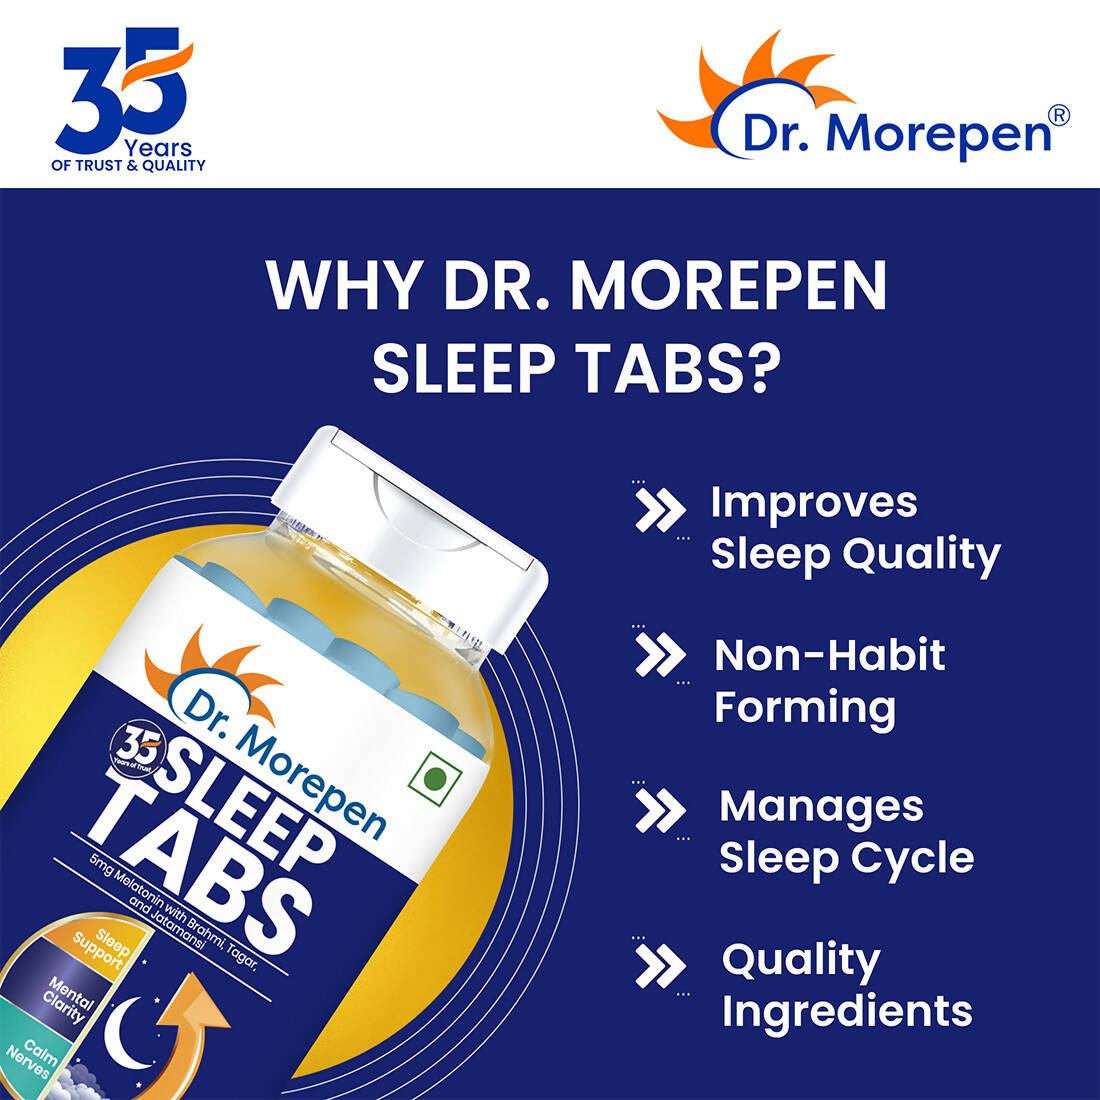 Dr. Morepen Sleep Tabs Melatonin 5mg Sleeping Tablets - Distacart